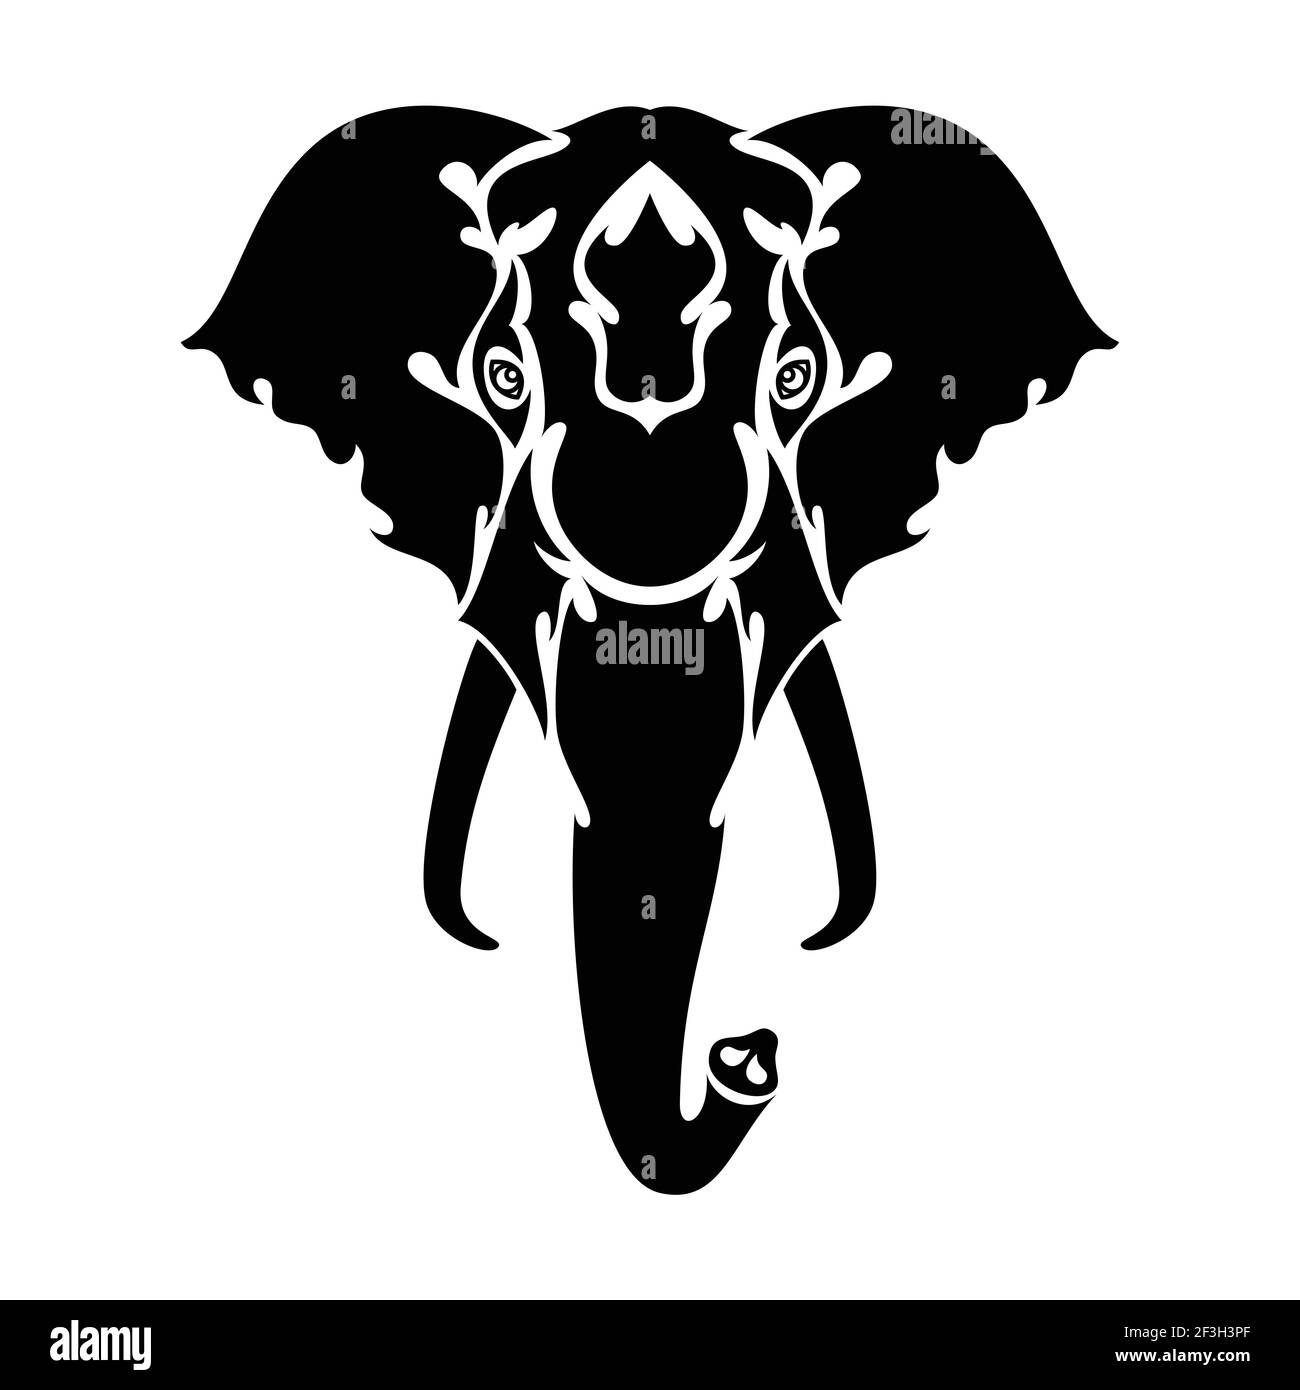 Handgezeichnetes abstraktes Porträt eines Elefanten für Tattoo, Logo, Wanddekor, T-Shirt-Print-Design oder outwear. Vektor-stilisierte Illustration Stock Vektor